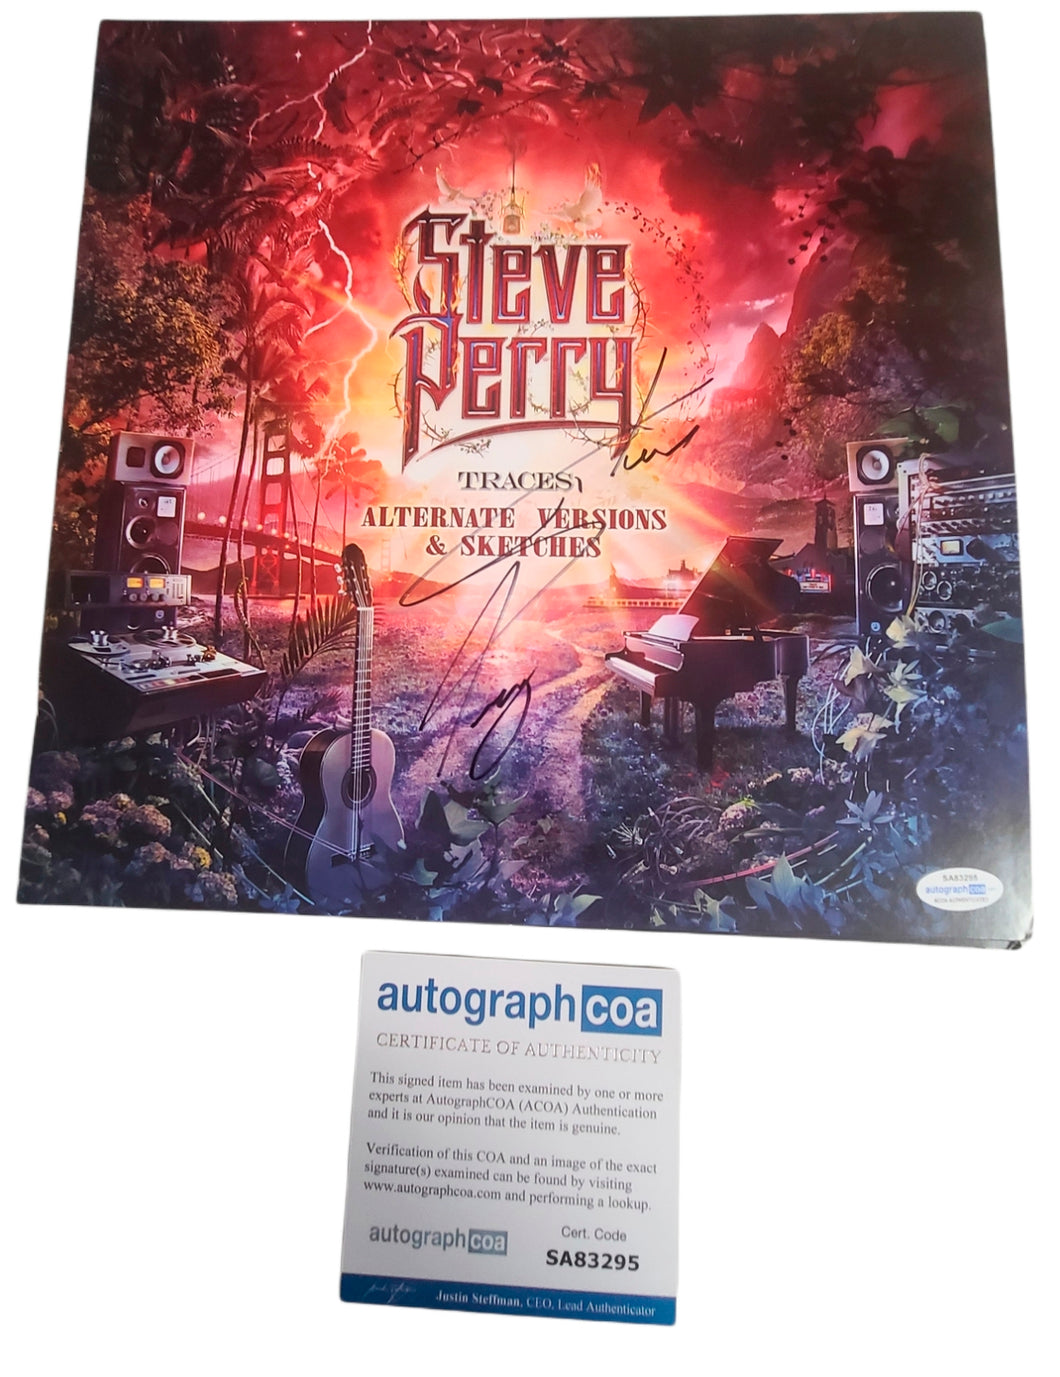 Journey Steve Perry Traces Autographed LP Album